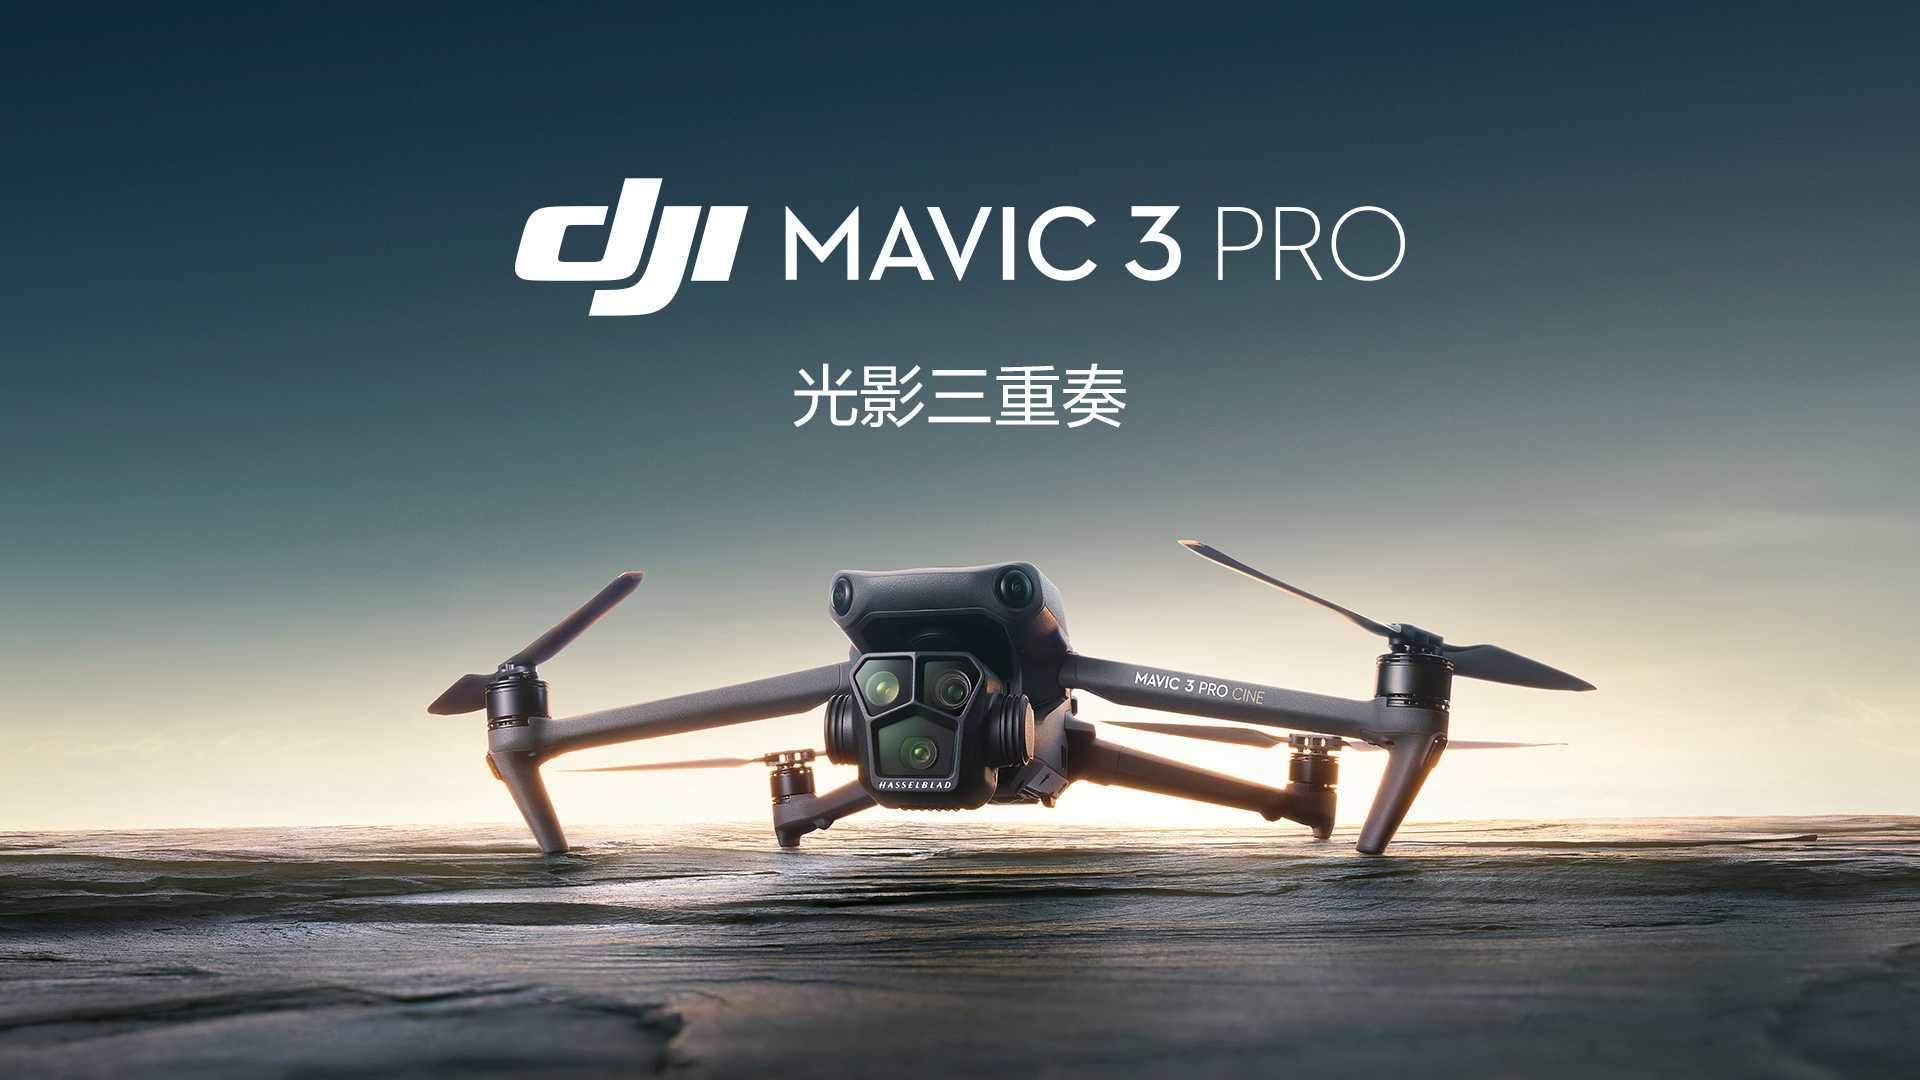 大疆发布 DJI Mavic 3 Pro 三摄旗舰无人机丨光影三重奏